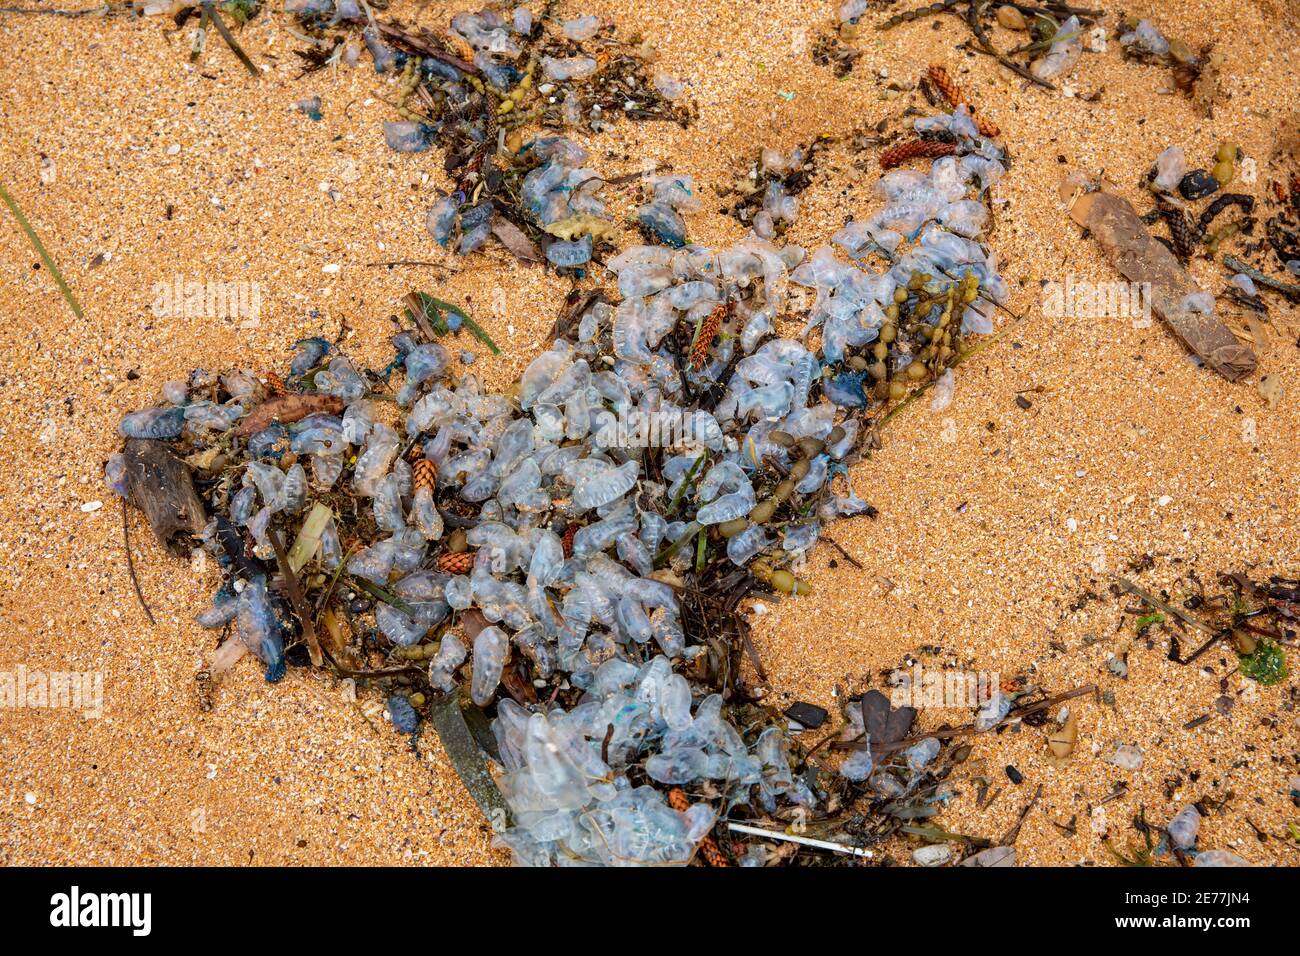 Blauflaschen oder portugiesischer Mann o Krieg liegen auf dem Sand an einem Sydney Strand, NSW, Australien, bekannt für ihre stechenden Tentakeln Stockfoto